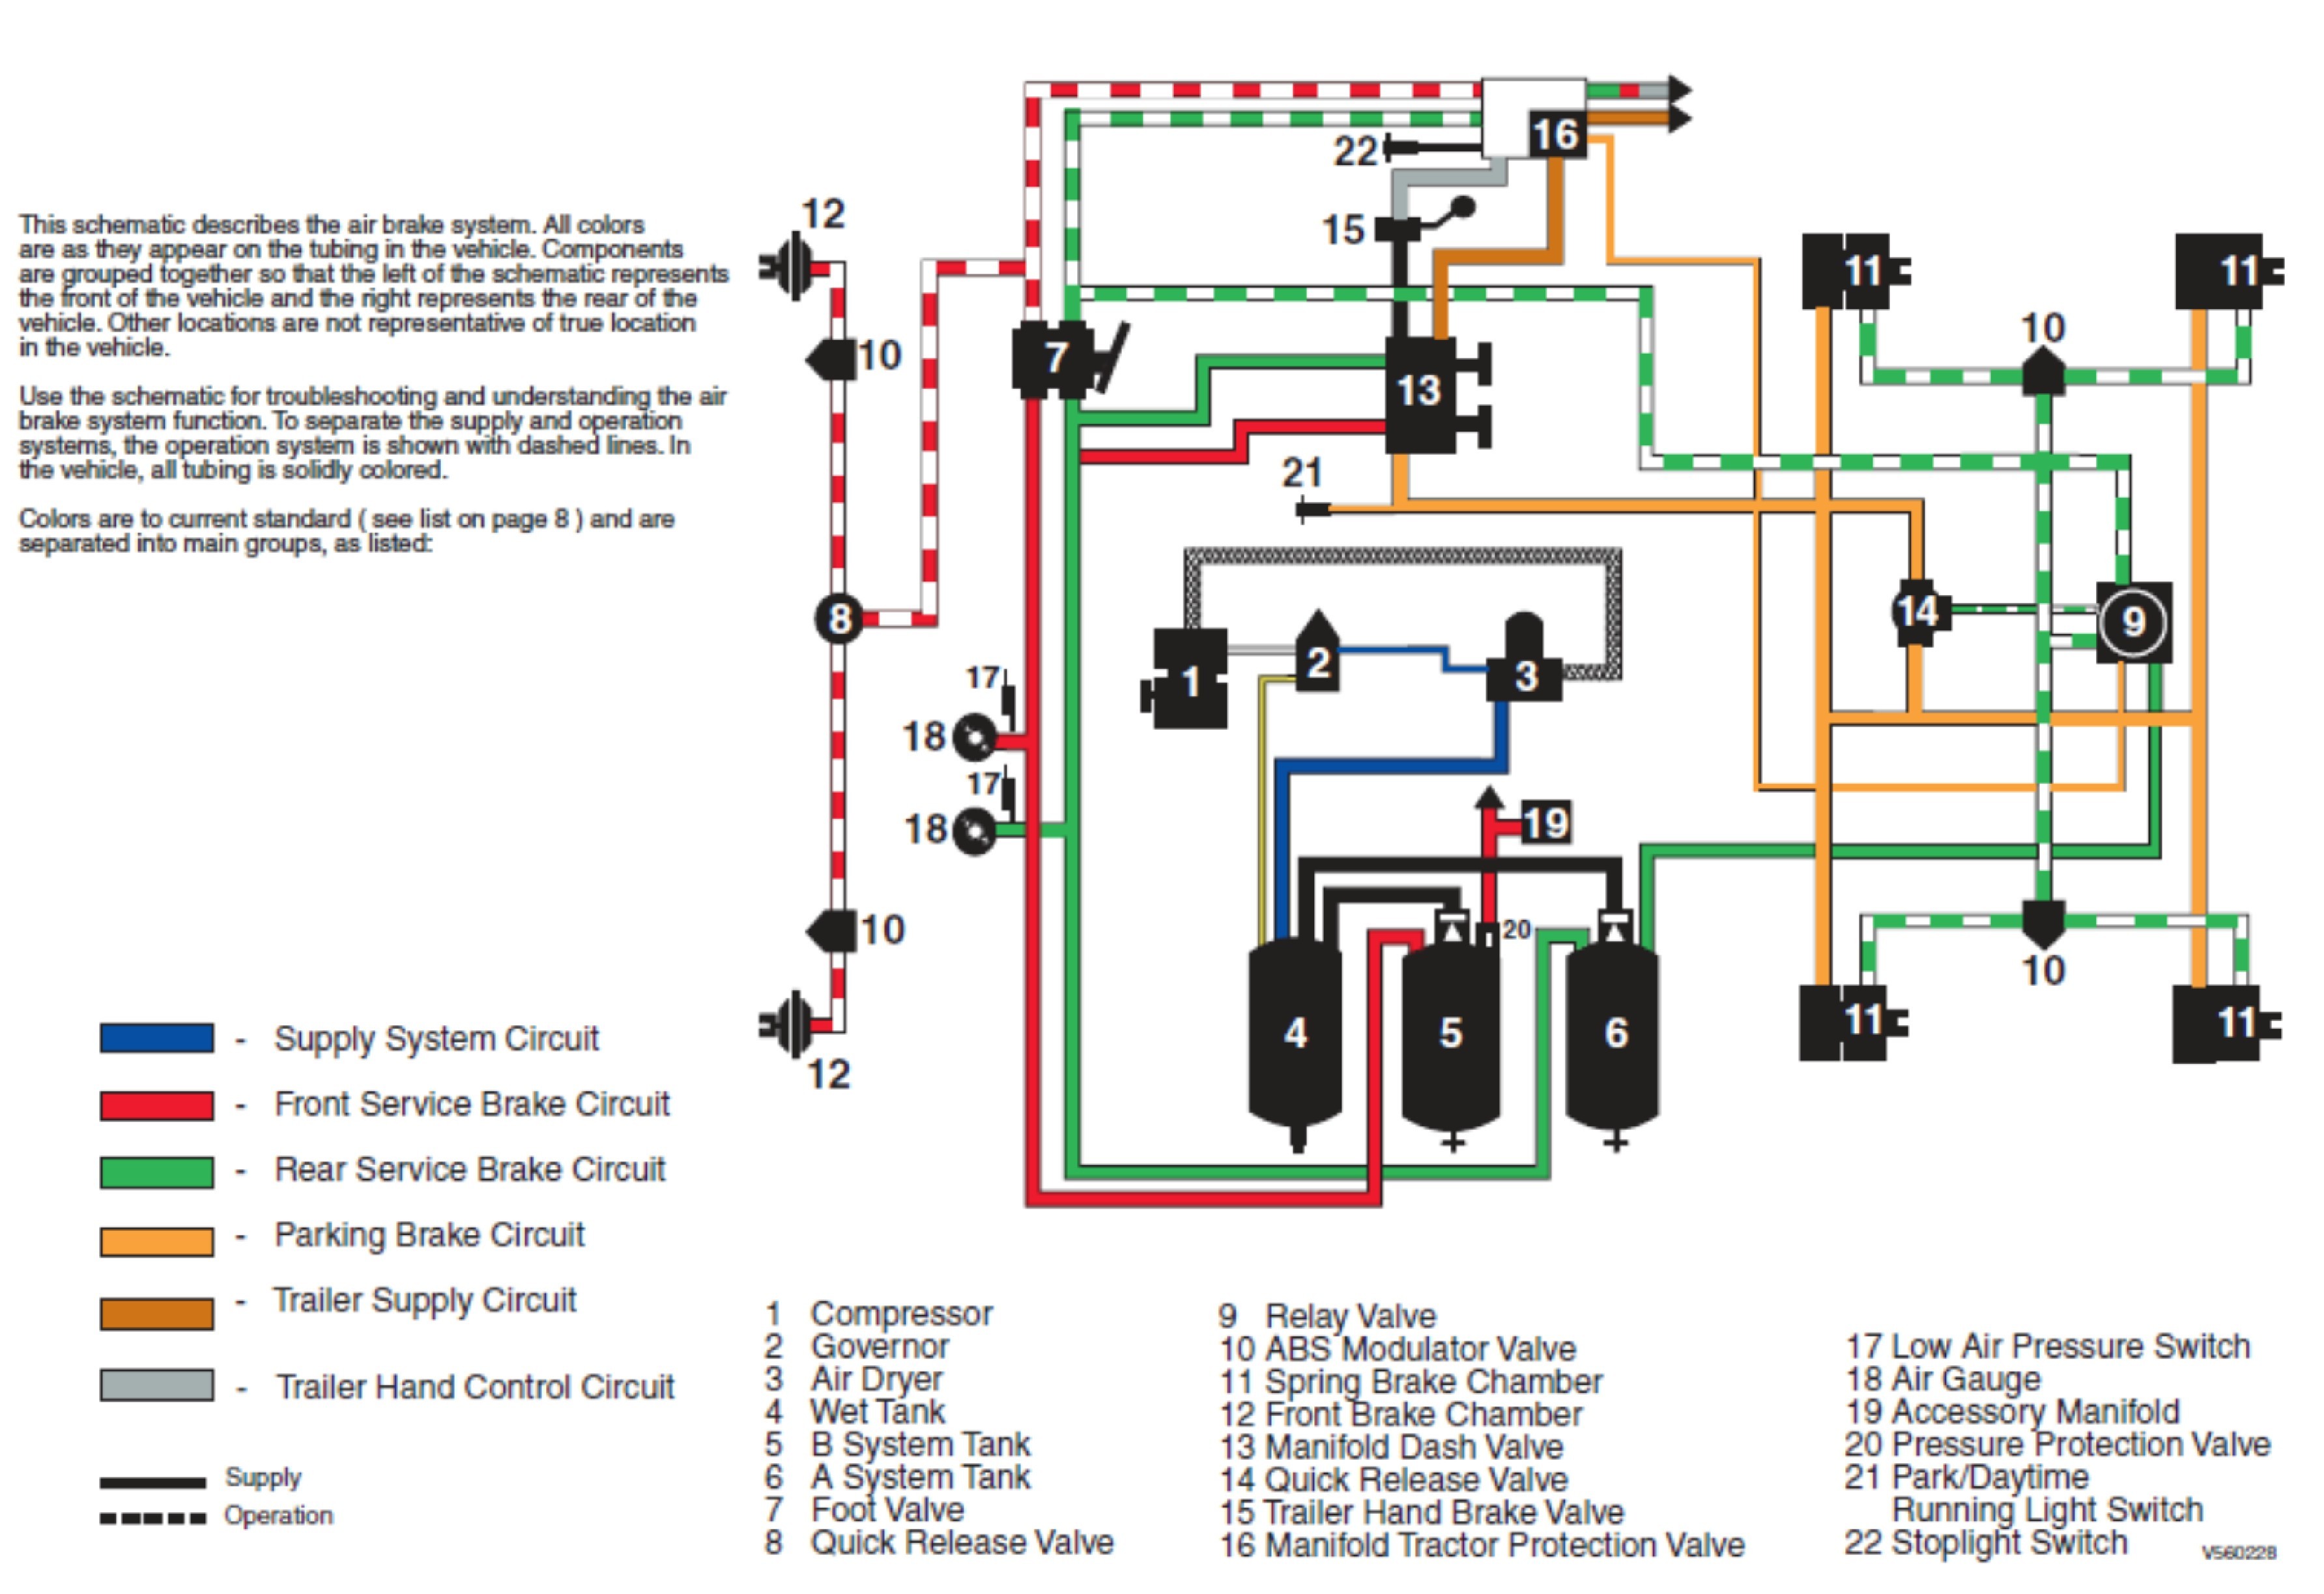 Truck Air Brake System Diagram Manual Volvo Brake Wiring Library Wiring Diagram • Of Truck Air Brake System Diagram Manual